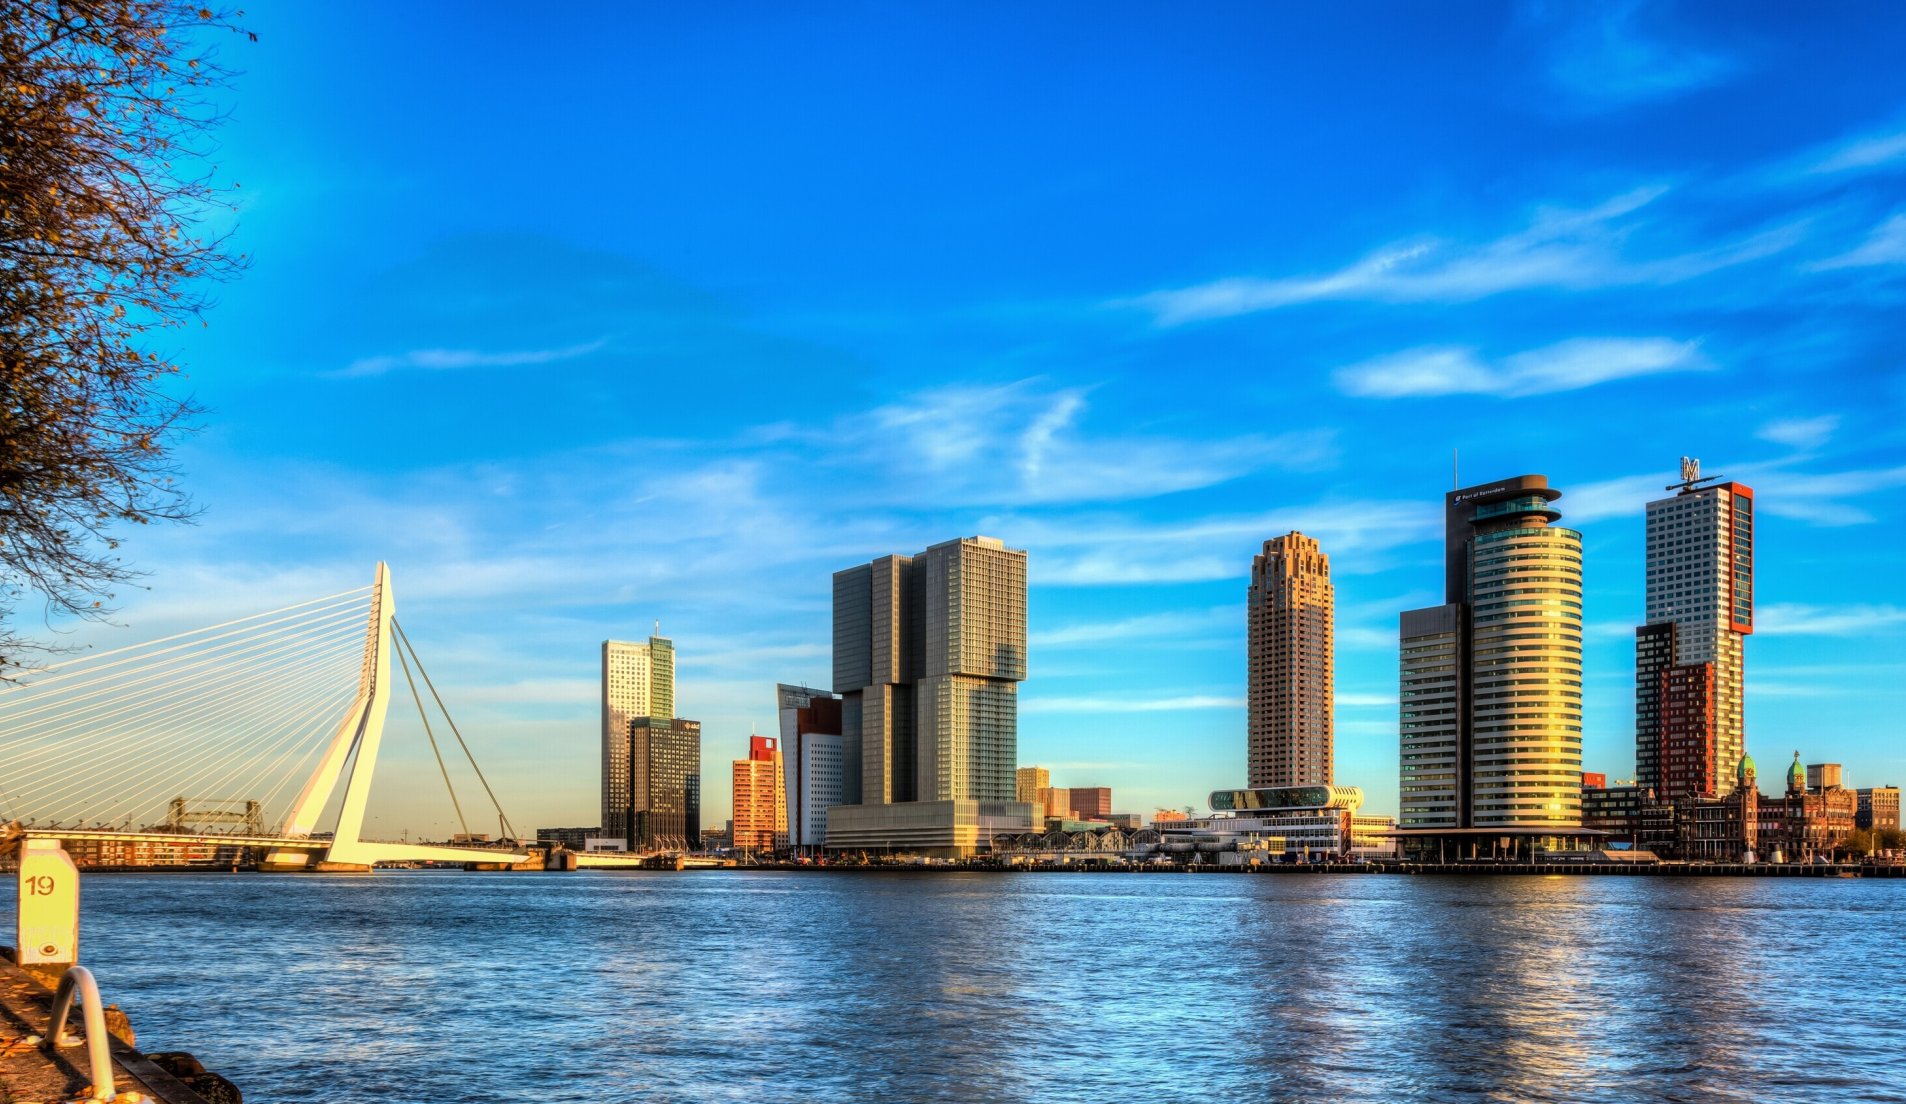 De haven in het ceentrum van Rotterdam